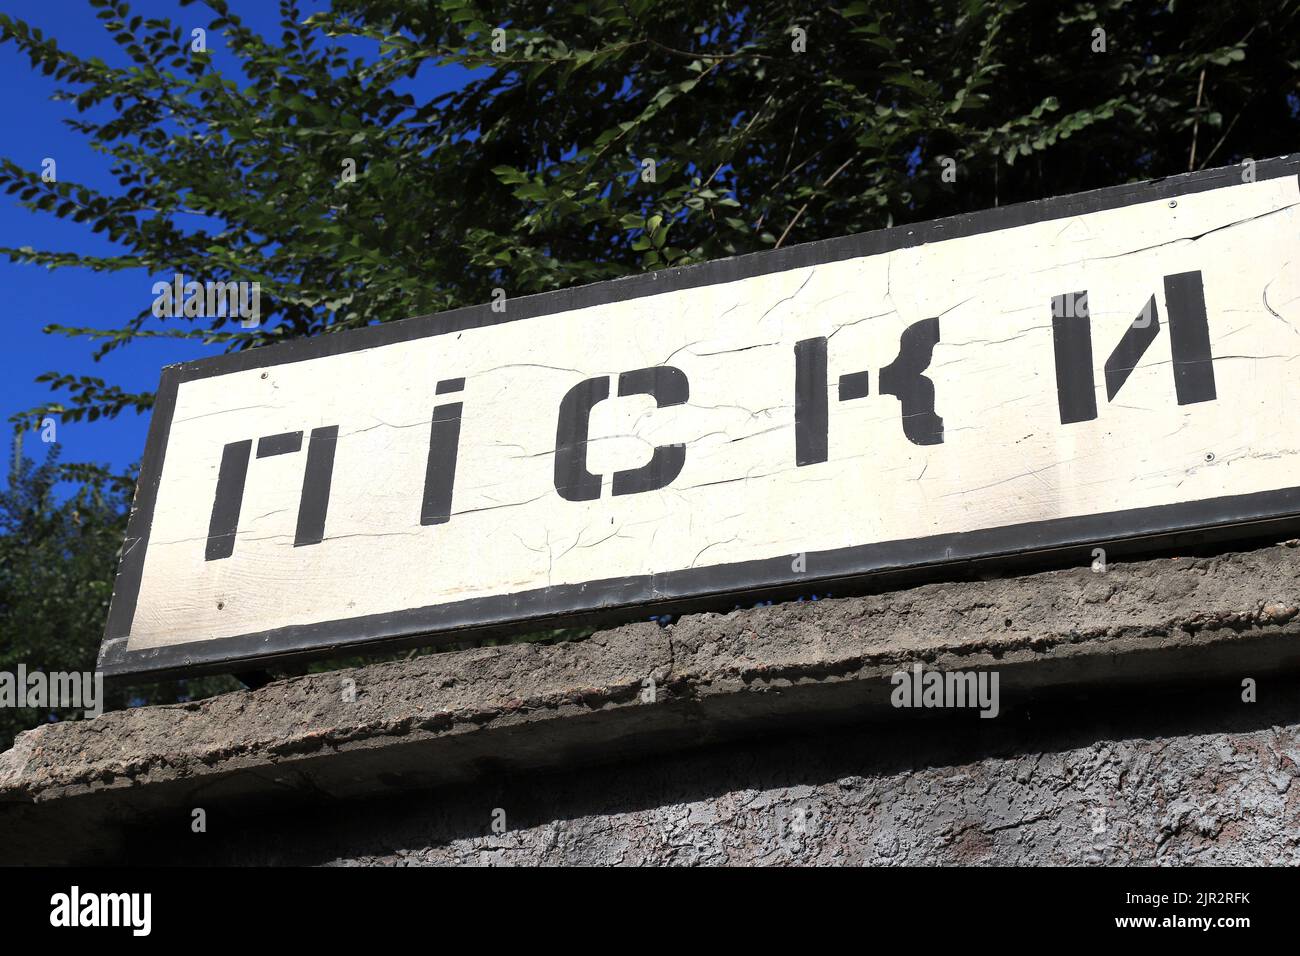 Cartello stradale con iscrizione in lingua Ucraina - Pisky. Regione di Donetsk, guerra Ucraina nelle sabbie, Donbass. Ucraina Russia guerra Foto Stock